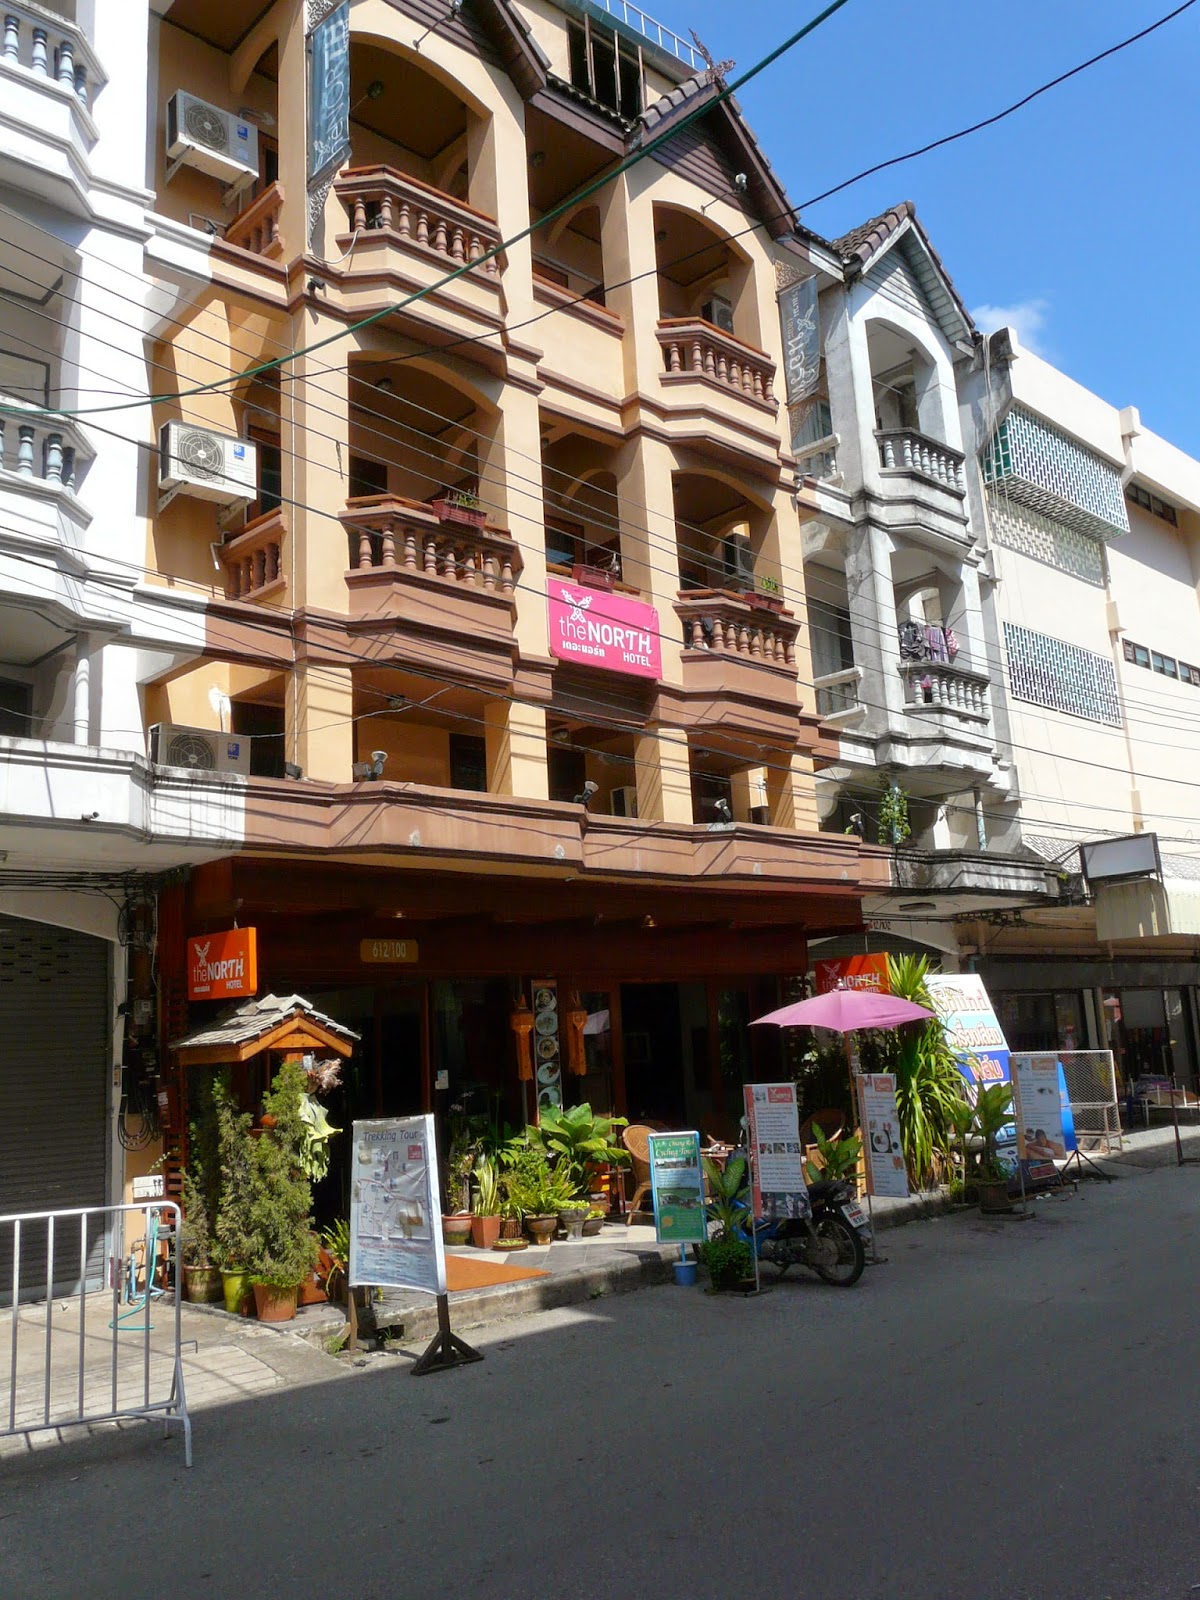 North Hotel gay-friendly hotel in Chiang Rai